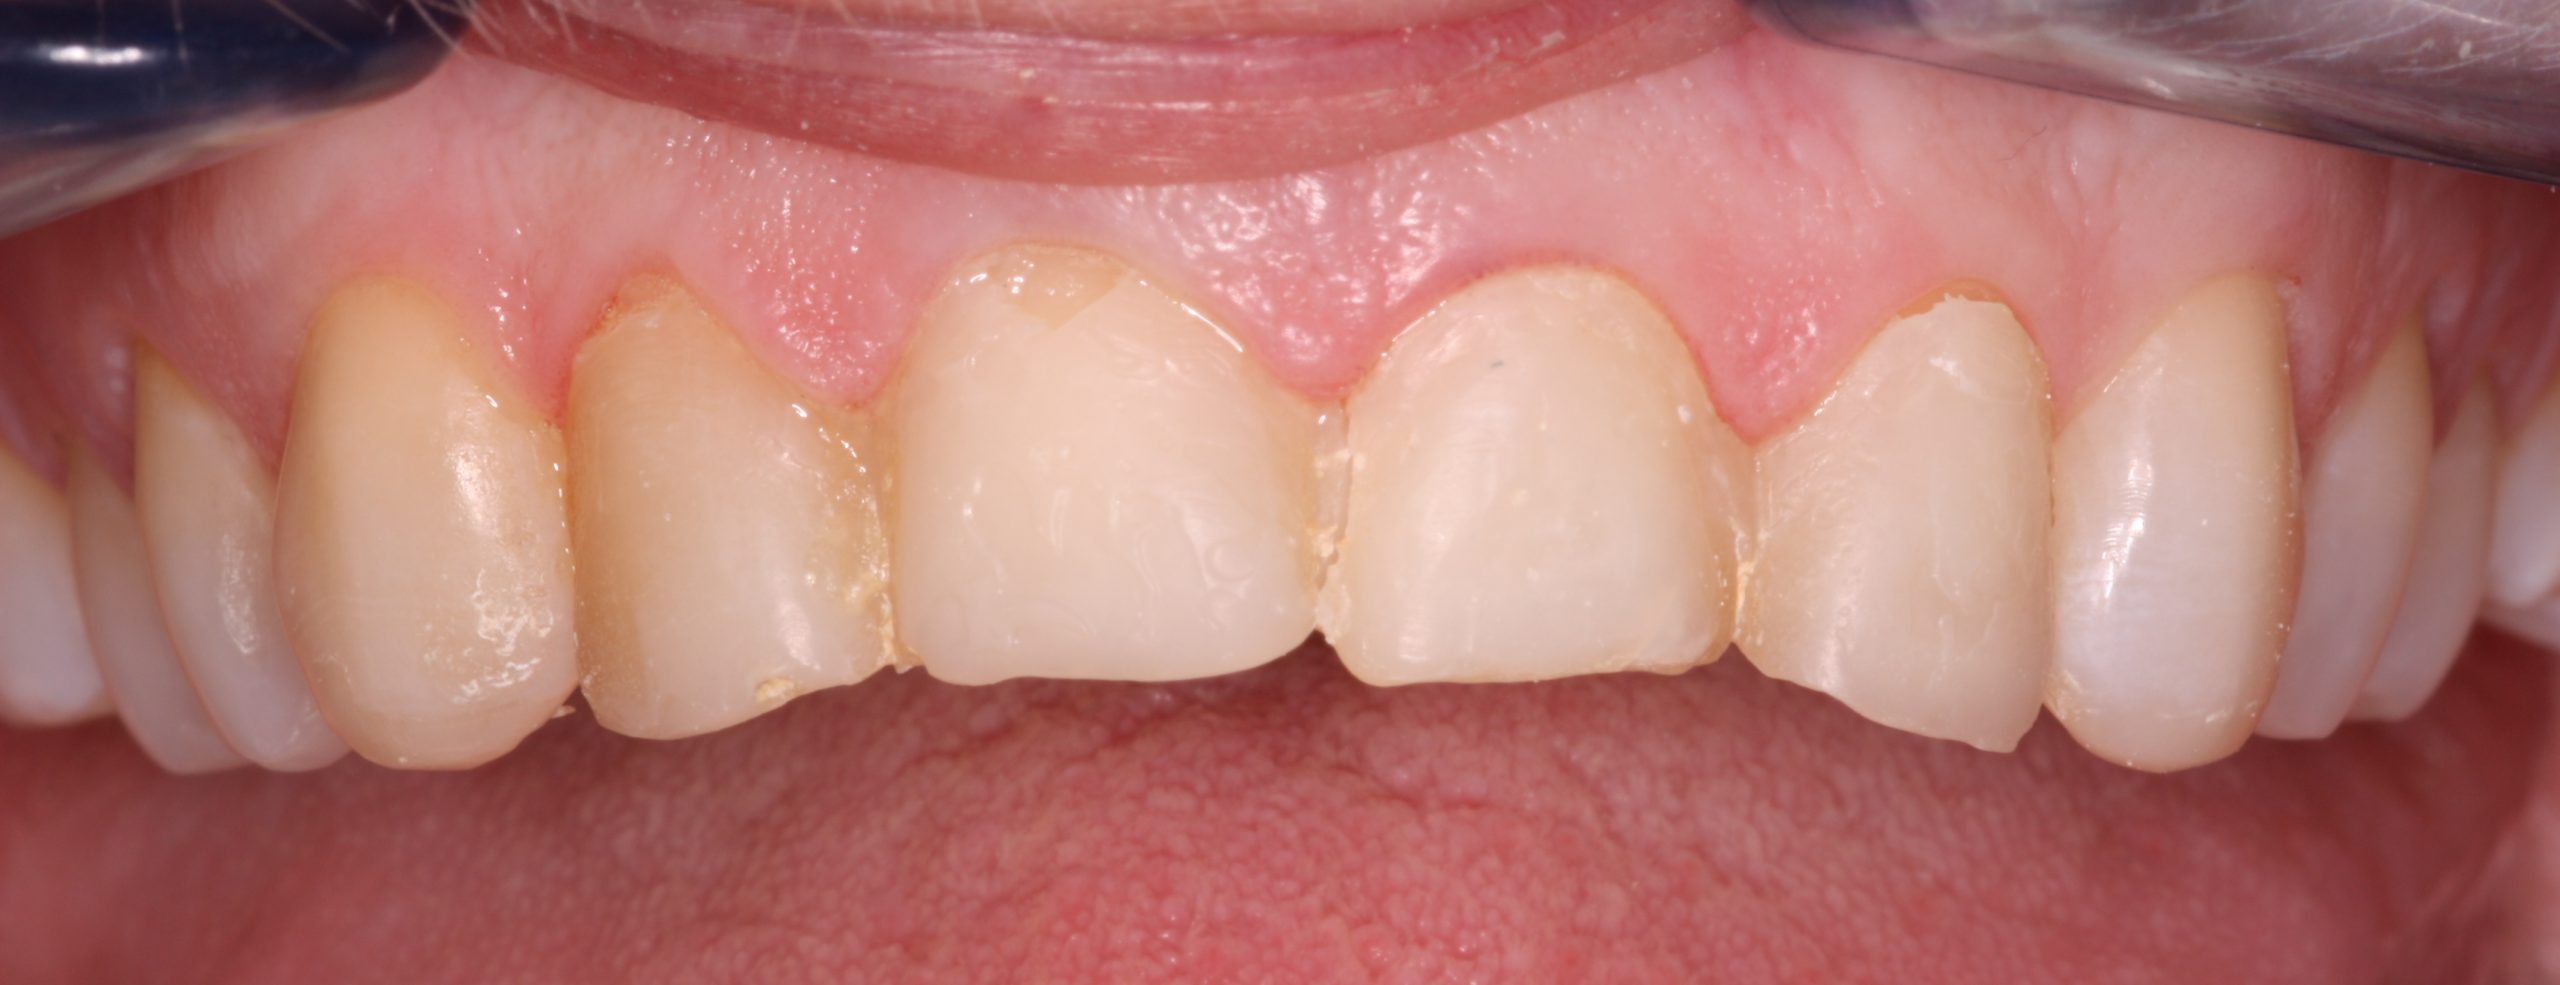 veneers - before picture of a patient before undergoing veneers treatment _beechwood dental_best dentist dublin